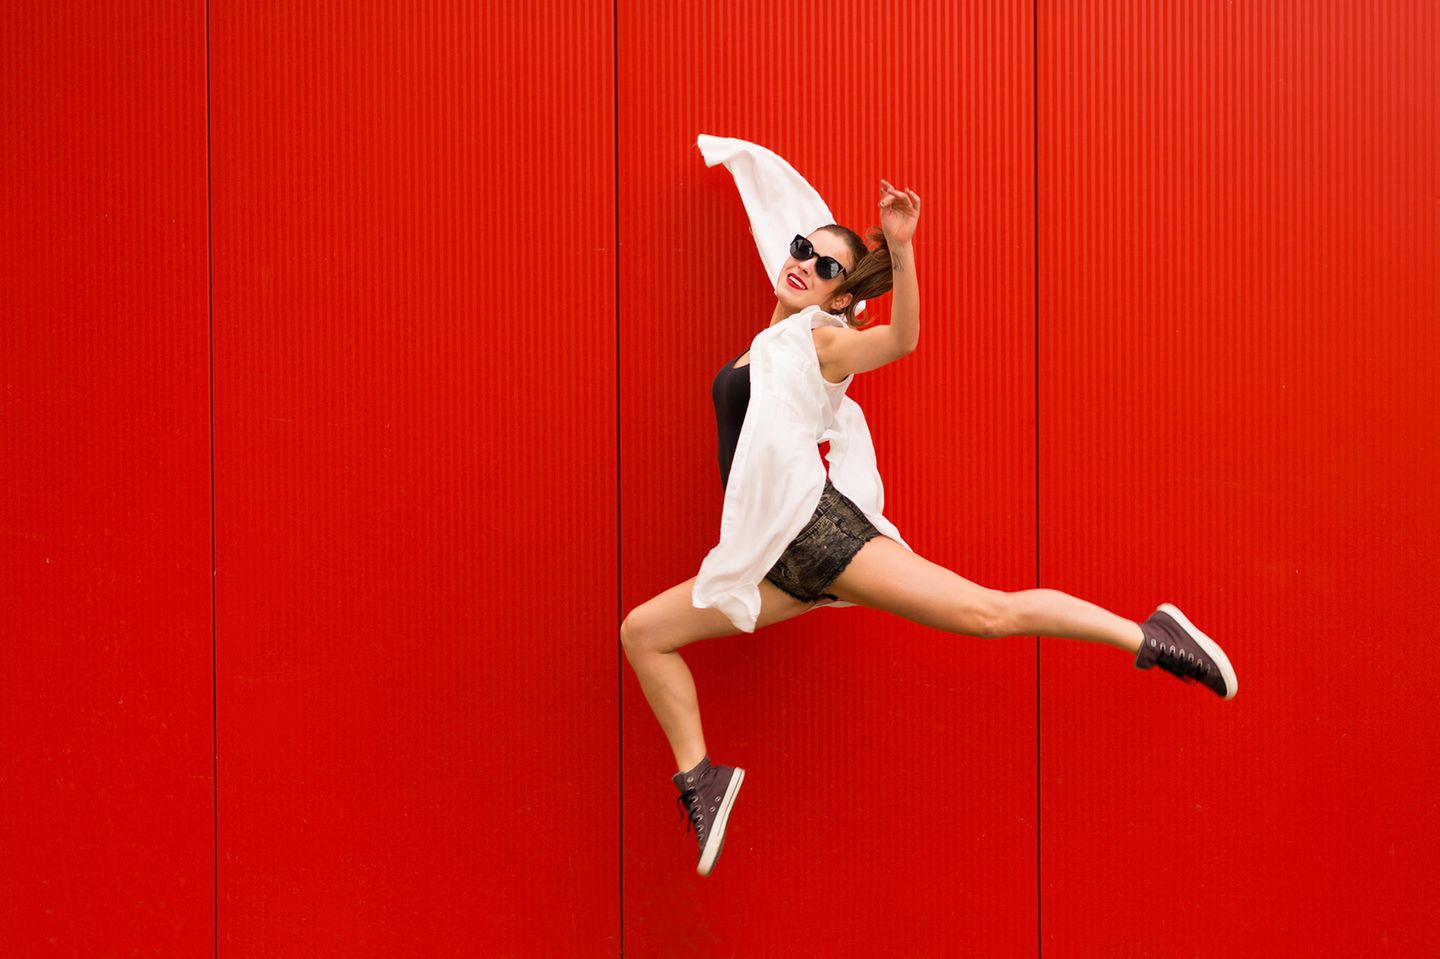 Junge Frau springt vor rotem Hintergrund in die Luft